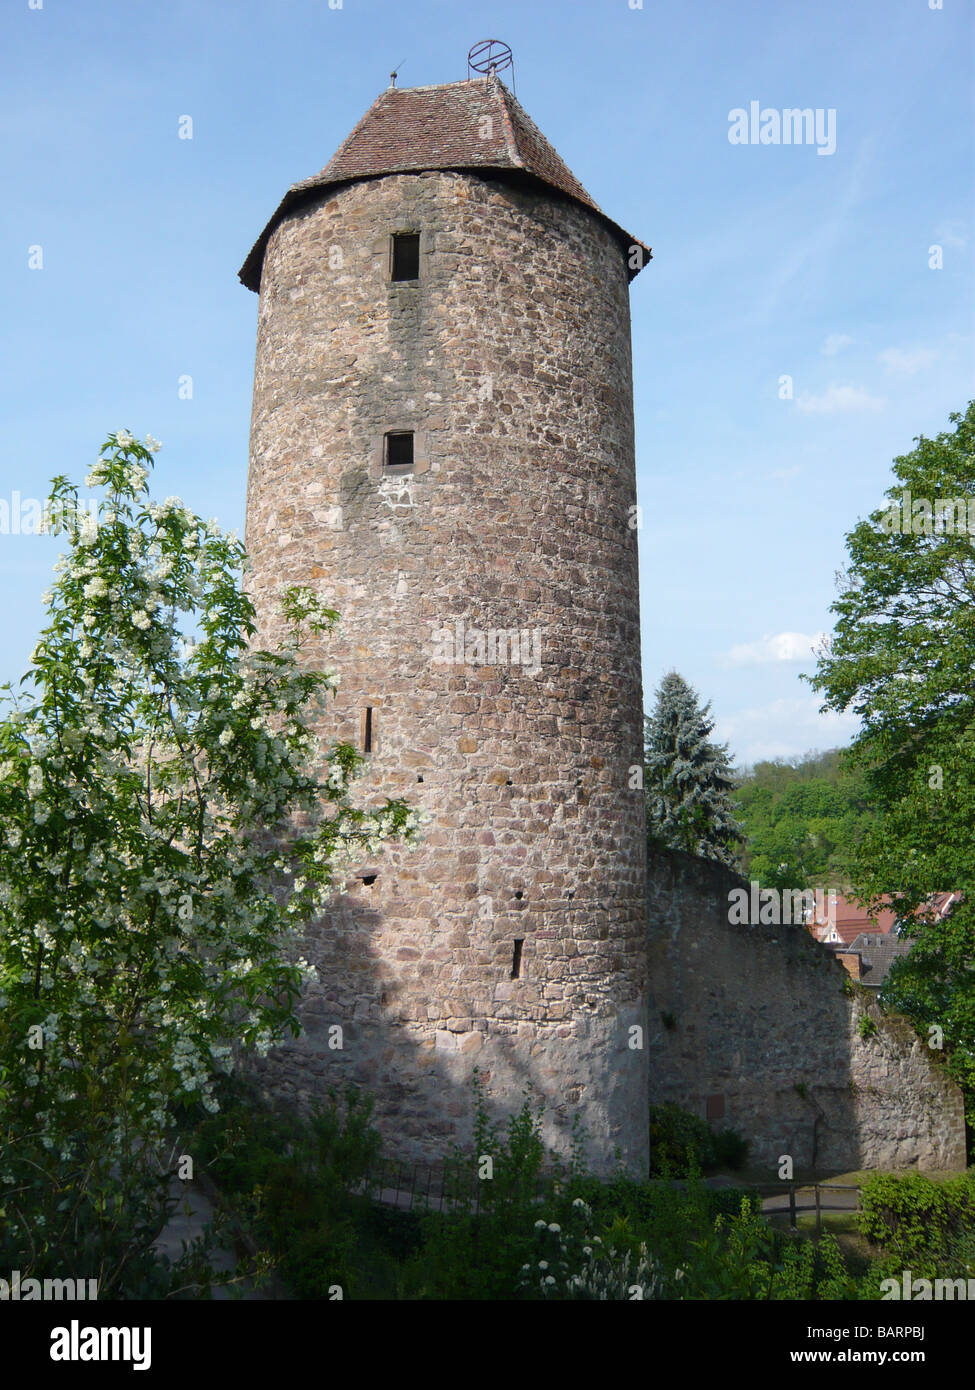 La torre "Blauer Hut' y la muralla de la ciudad,Weinheim, Odenwald, Alemania Foto de stock